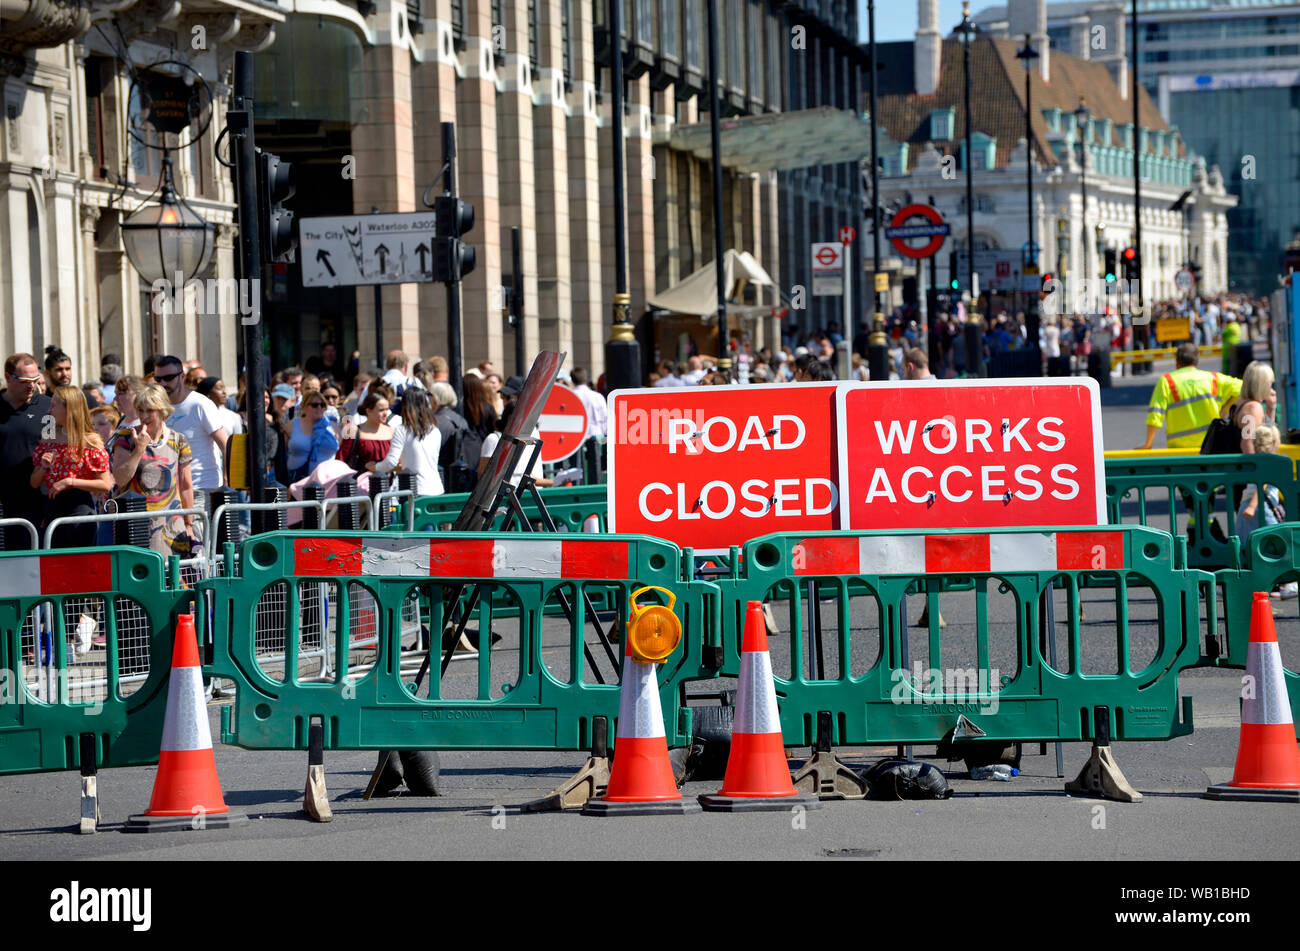 Londra, Inghilterra, Regno Unito. Bridge Street, Piazza del Parlamento chiuso per lavori stradali Foto Stock